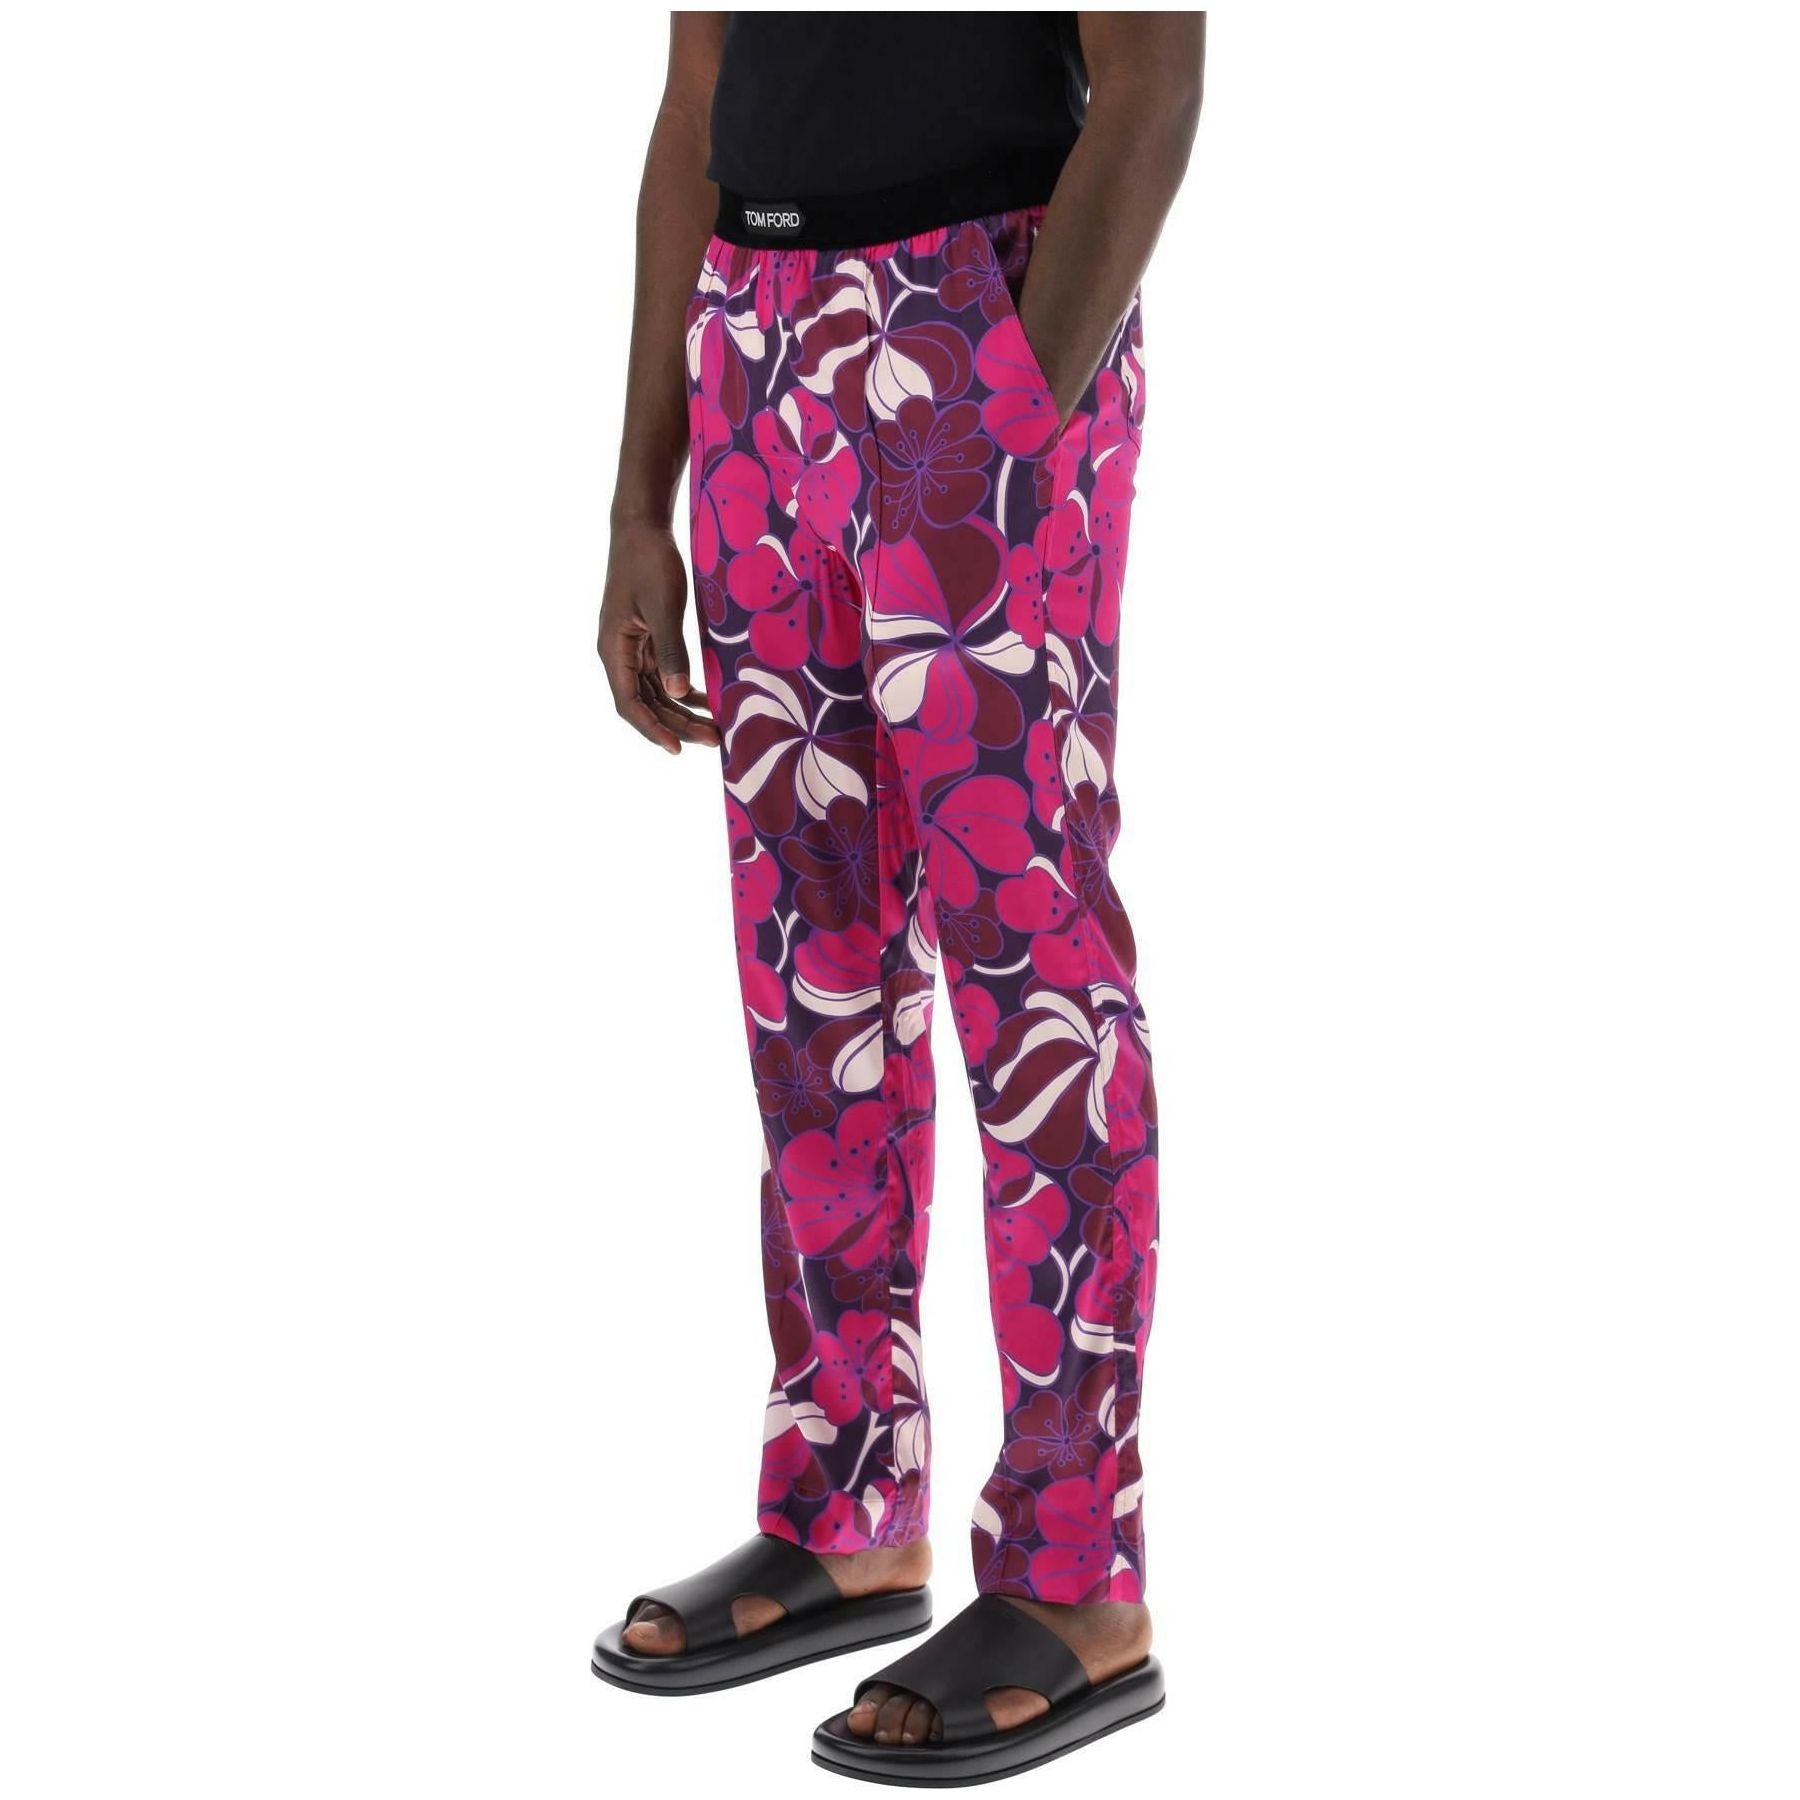 Pajama Pants In Floral Silk TOM FORD JOHN JULIA.